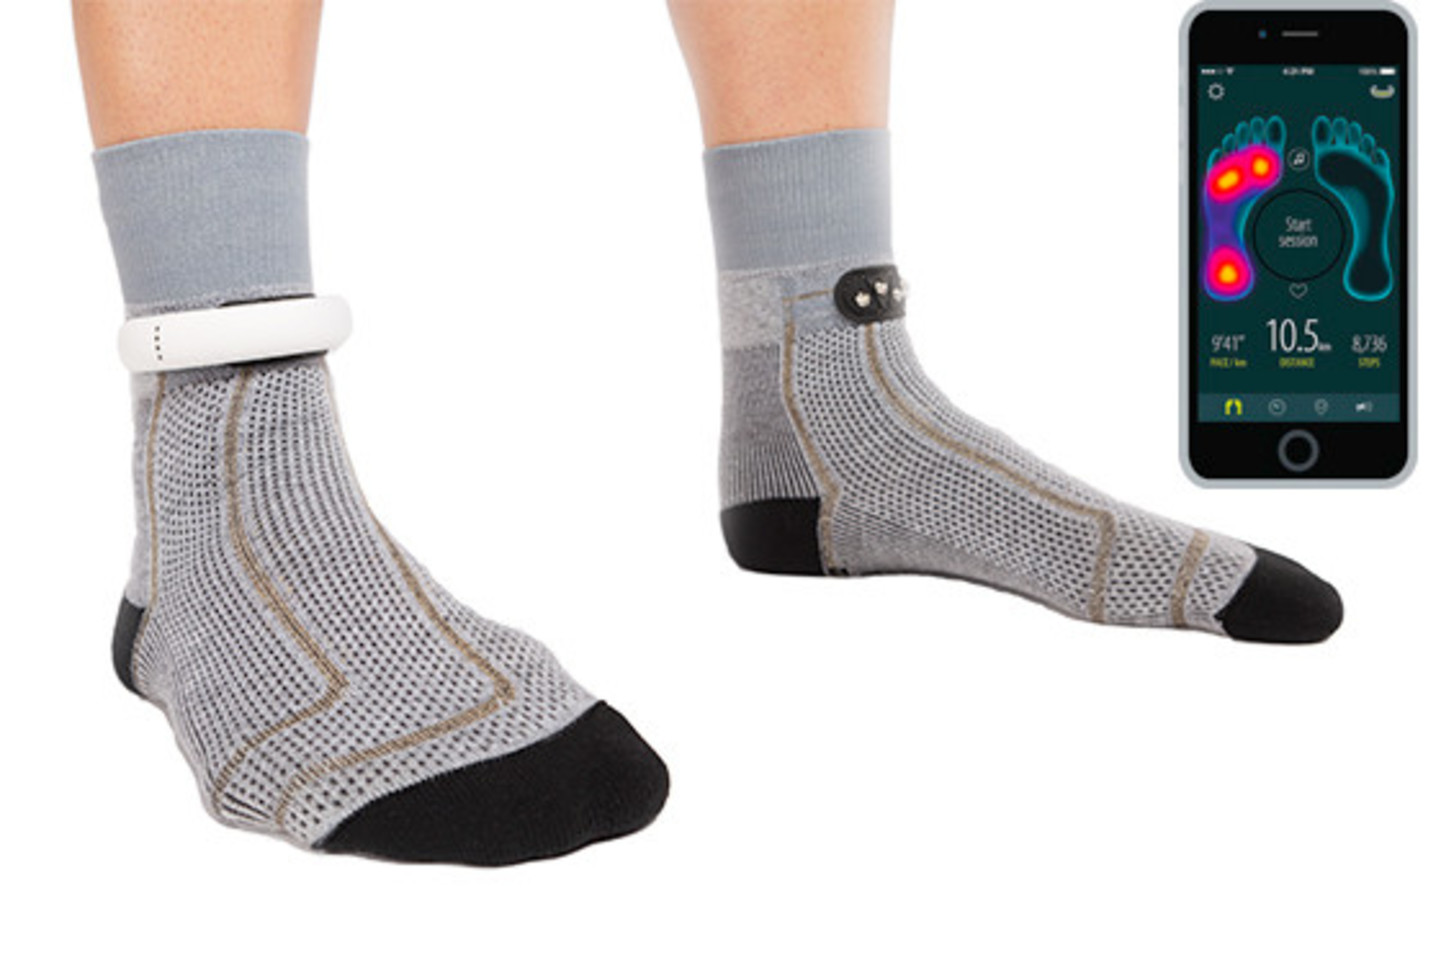 Kojinės „Fitness Socks“ fiksuoja duomenis apie dėvinčiojo sveikatą ir sportavimo įpročius.<br>Kadras iš „YouTube“